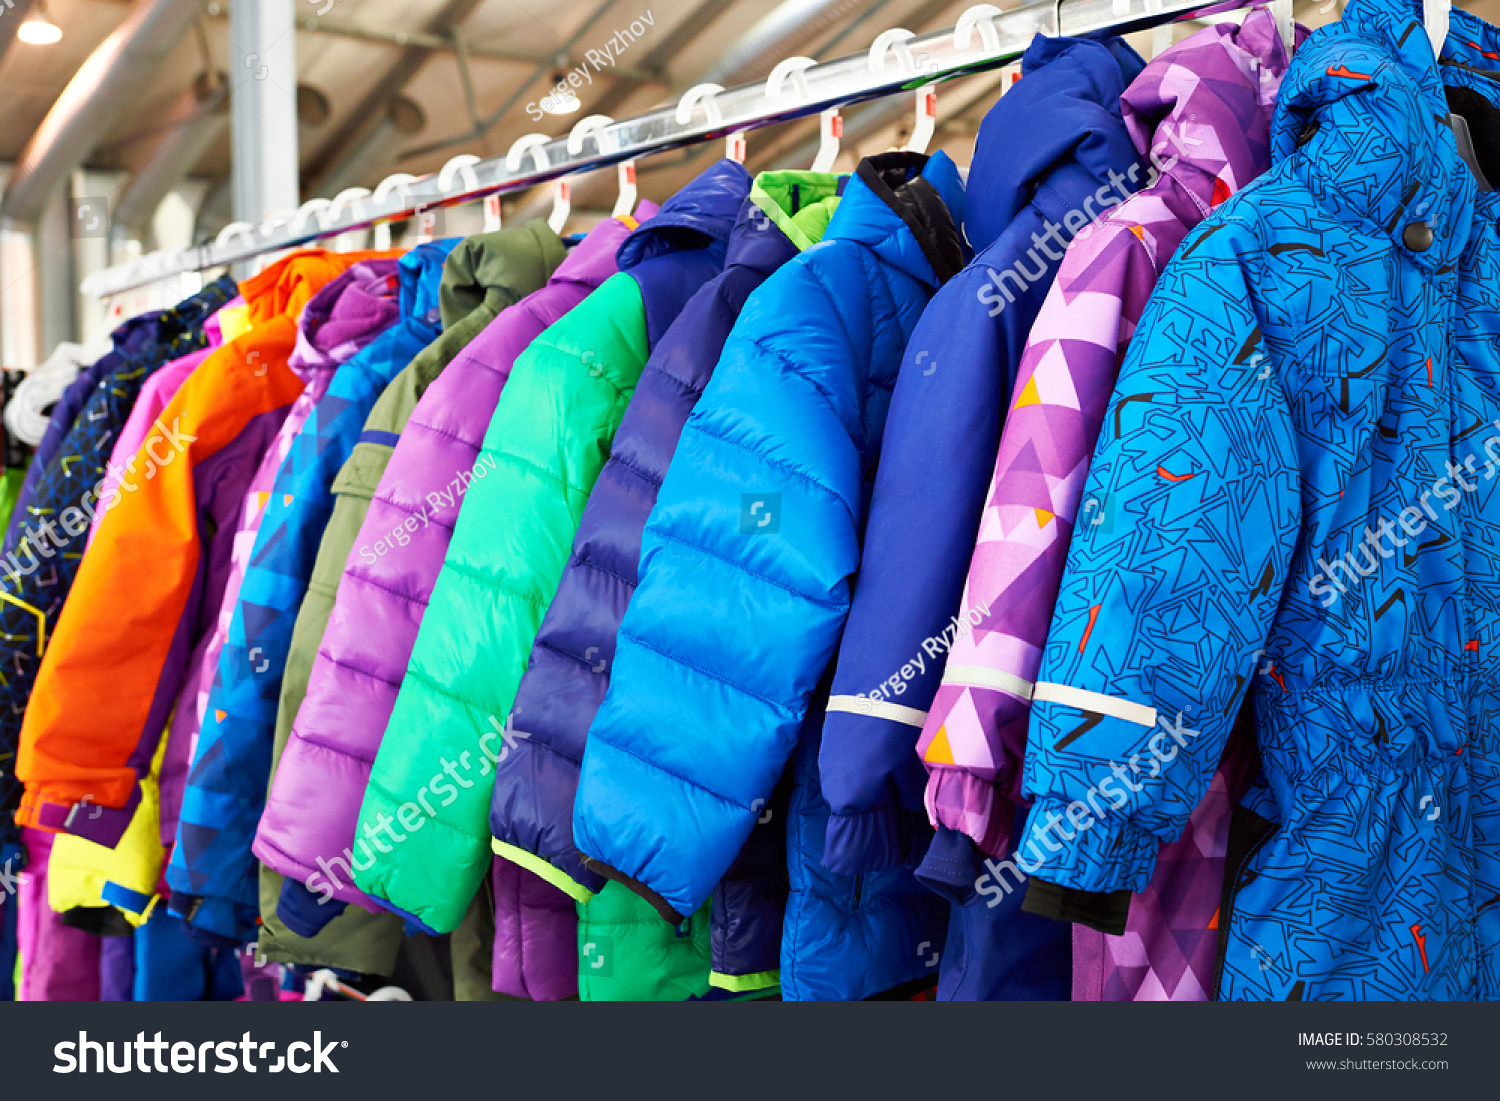 89,653 Coats For Kids Images, Stock Photos & Vectors | Shutterstock